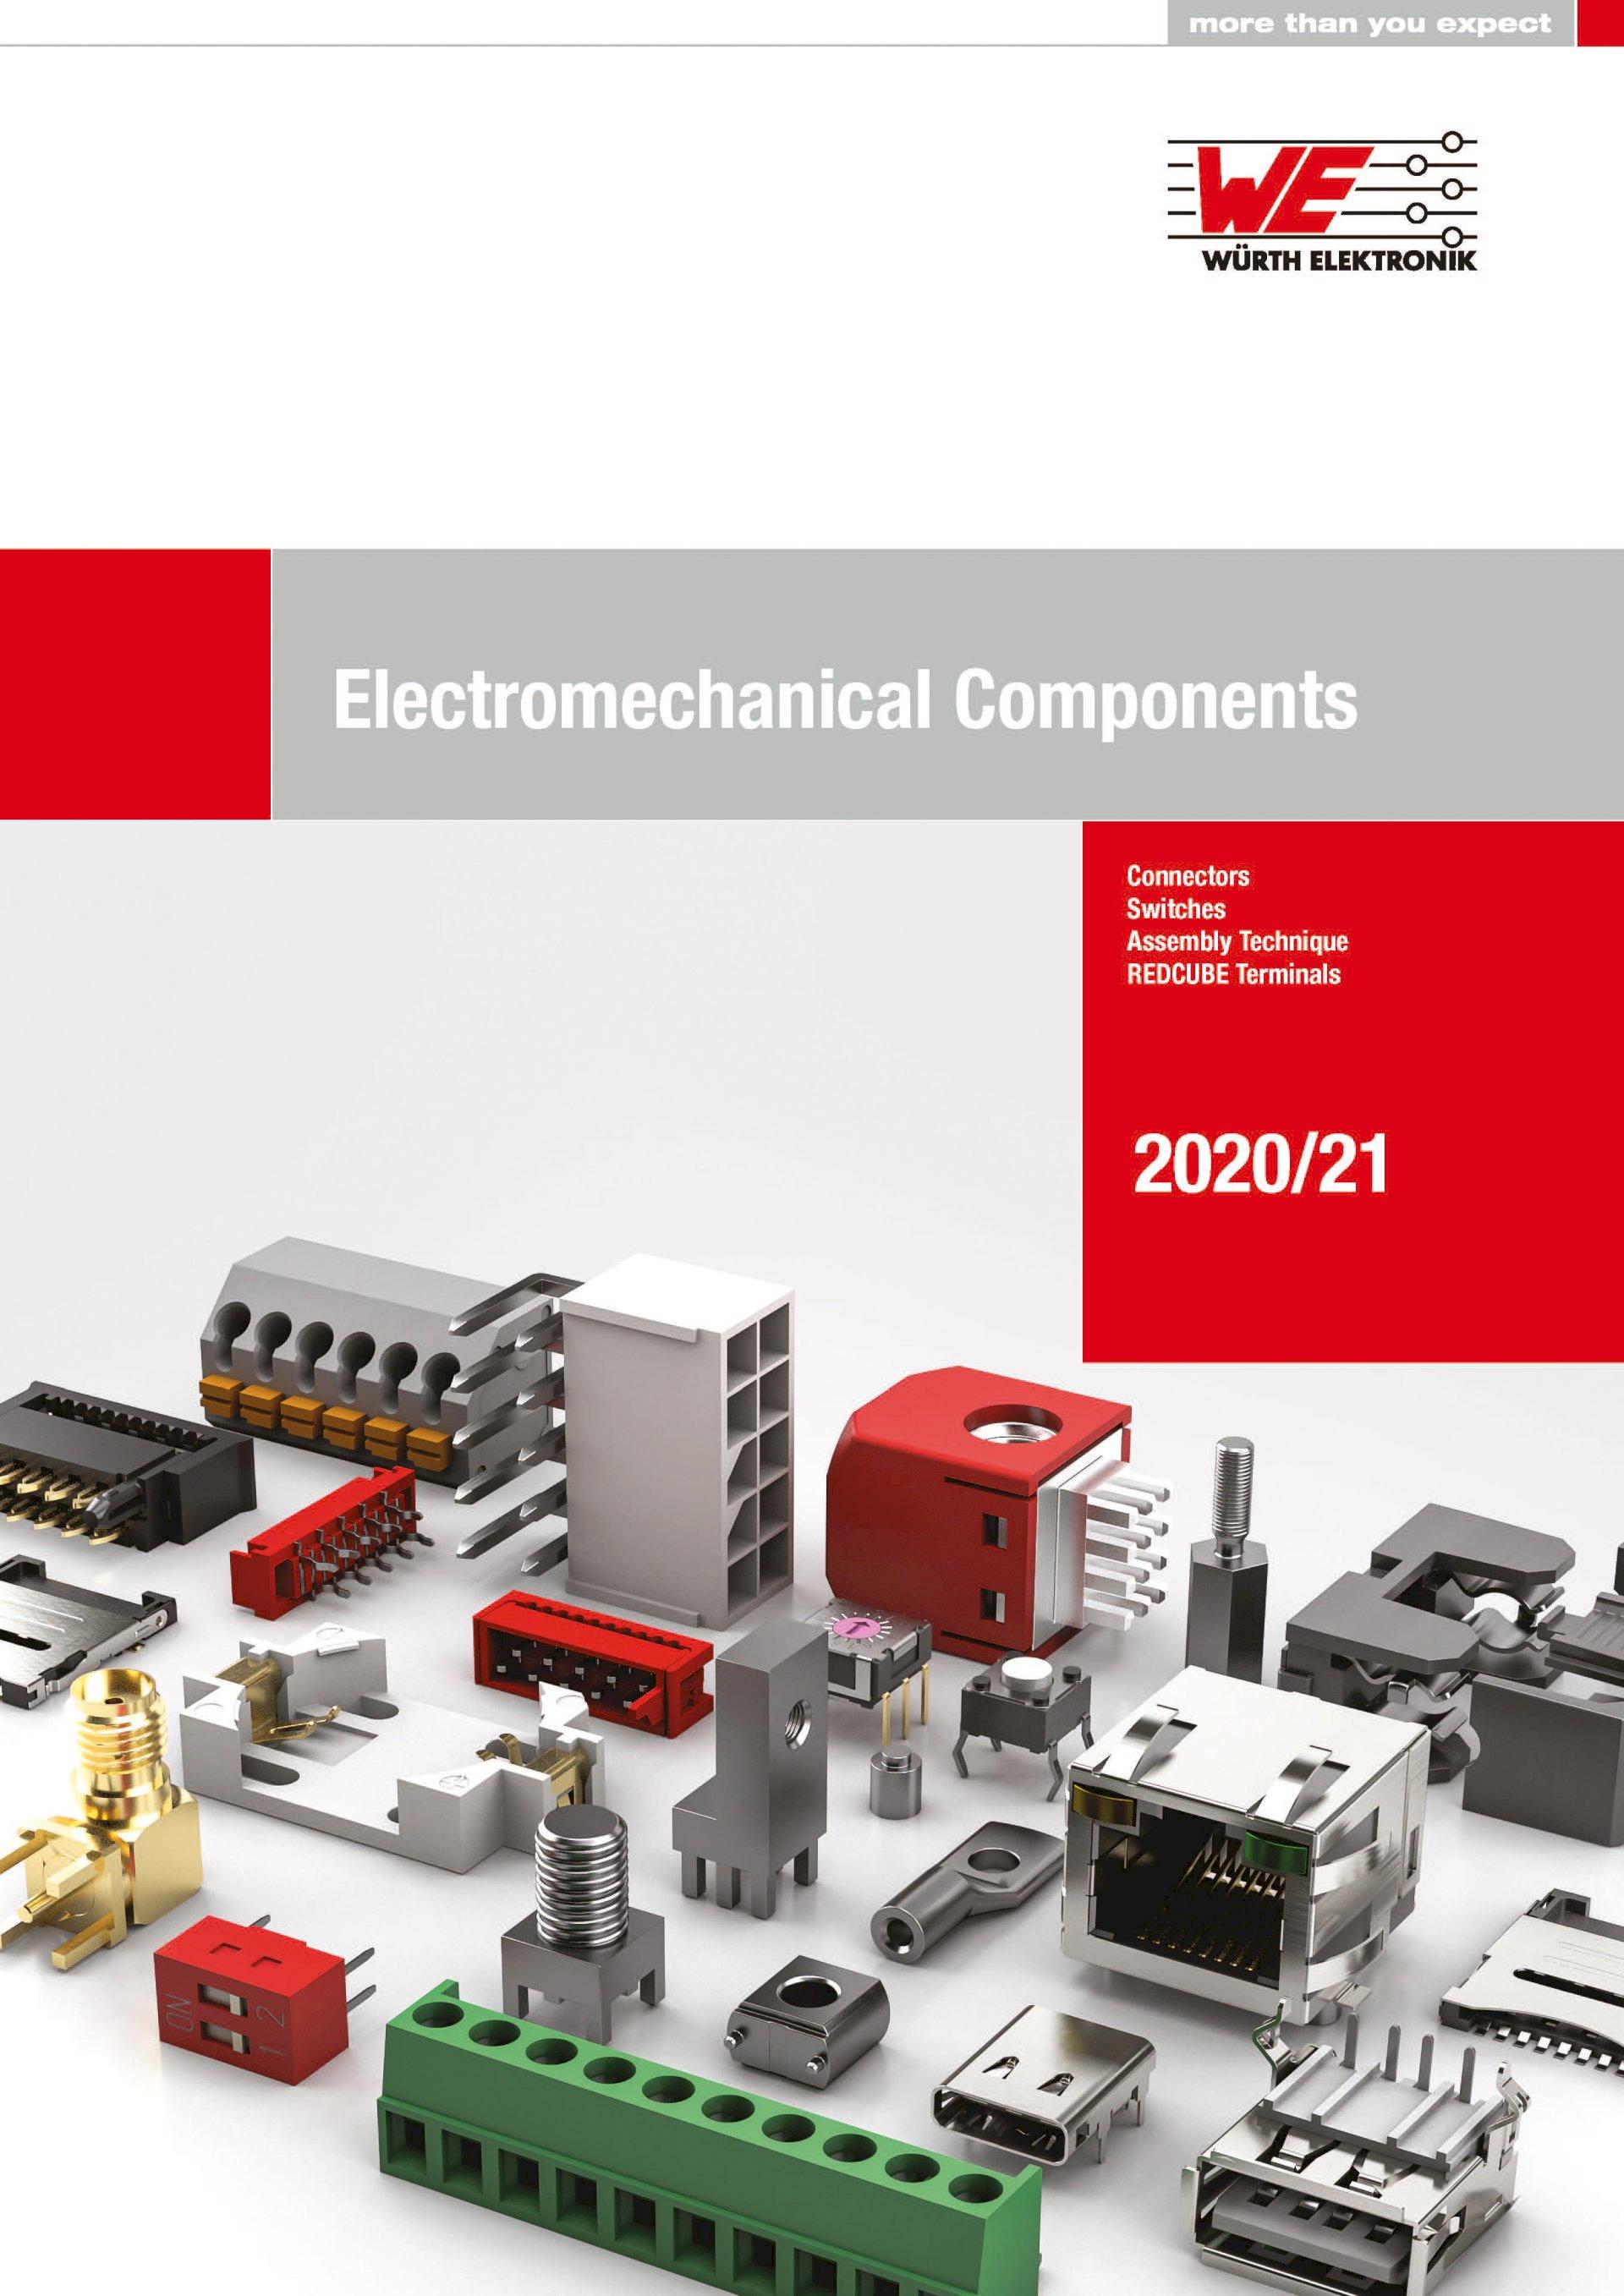 Würth Elektronik publishes its catalog of electromechanical components